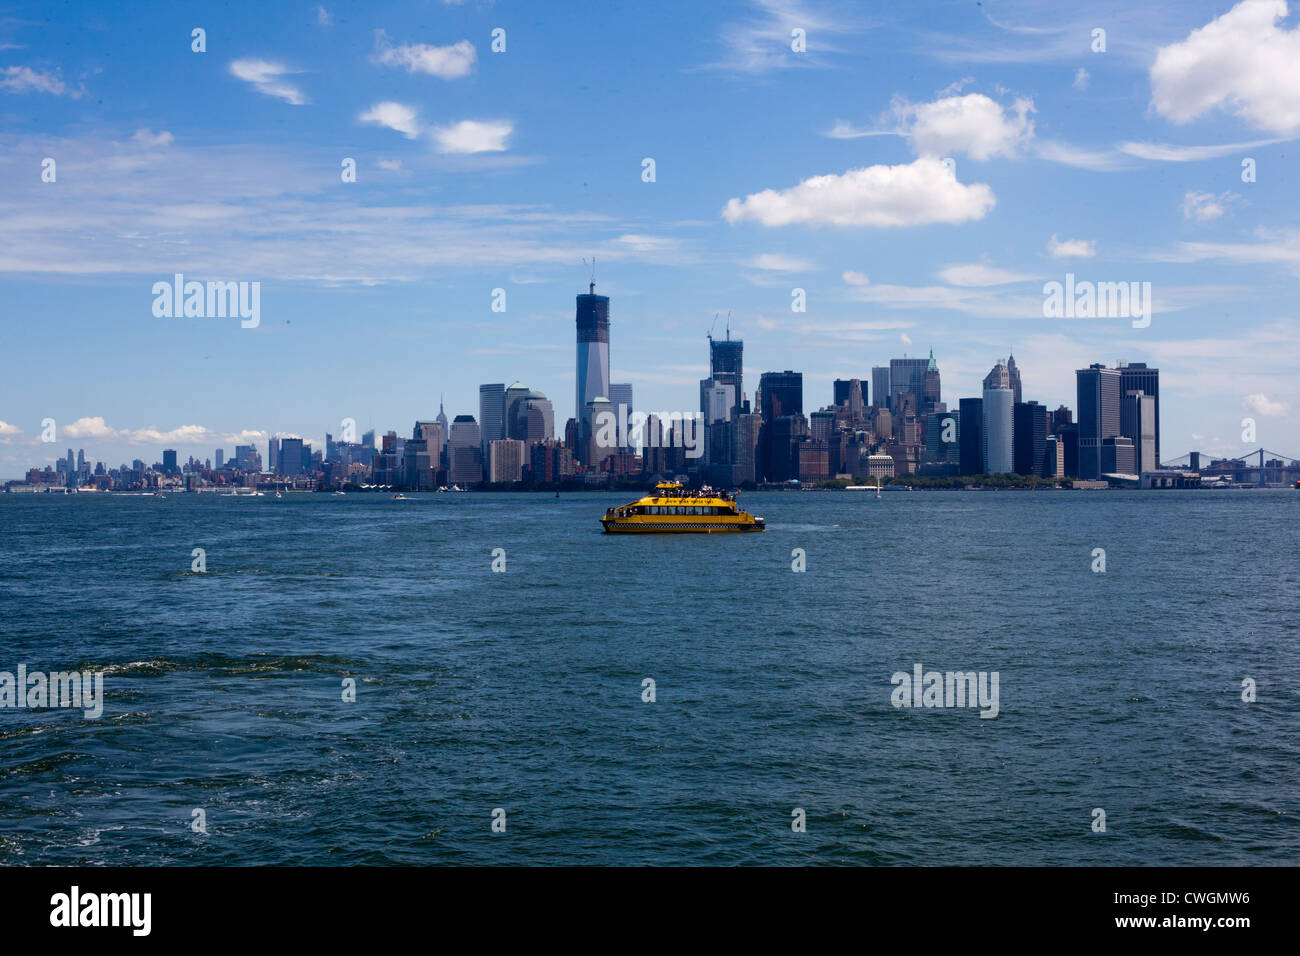 Un bateau de tourisme est vu dans le port de New York avec l'île de Manhattan dans l'arrière-plan Banque D'Images